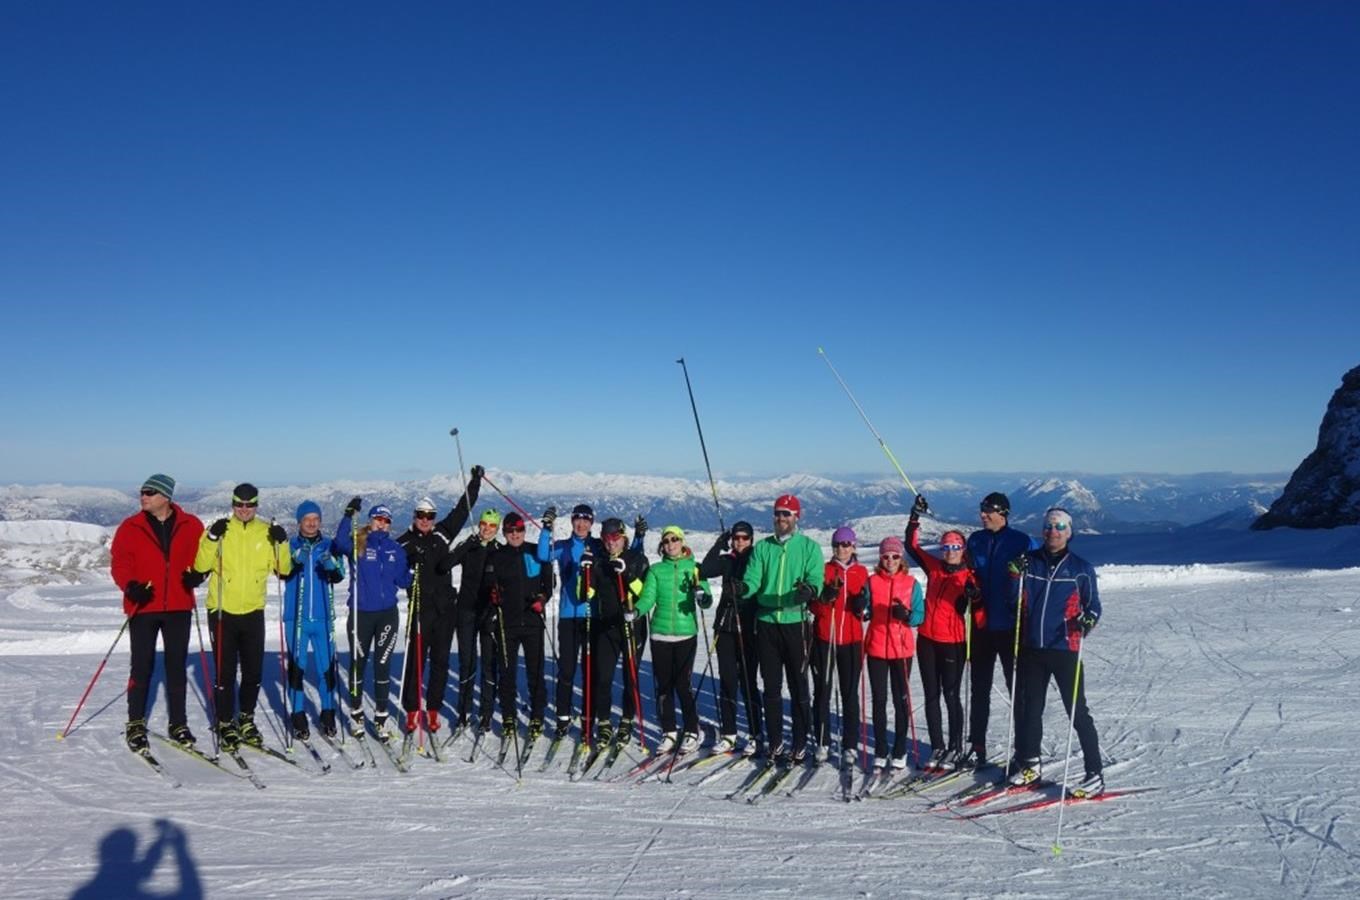 Kurzy běžeckého lyžování Nordic Academy